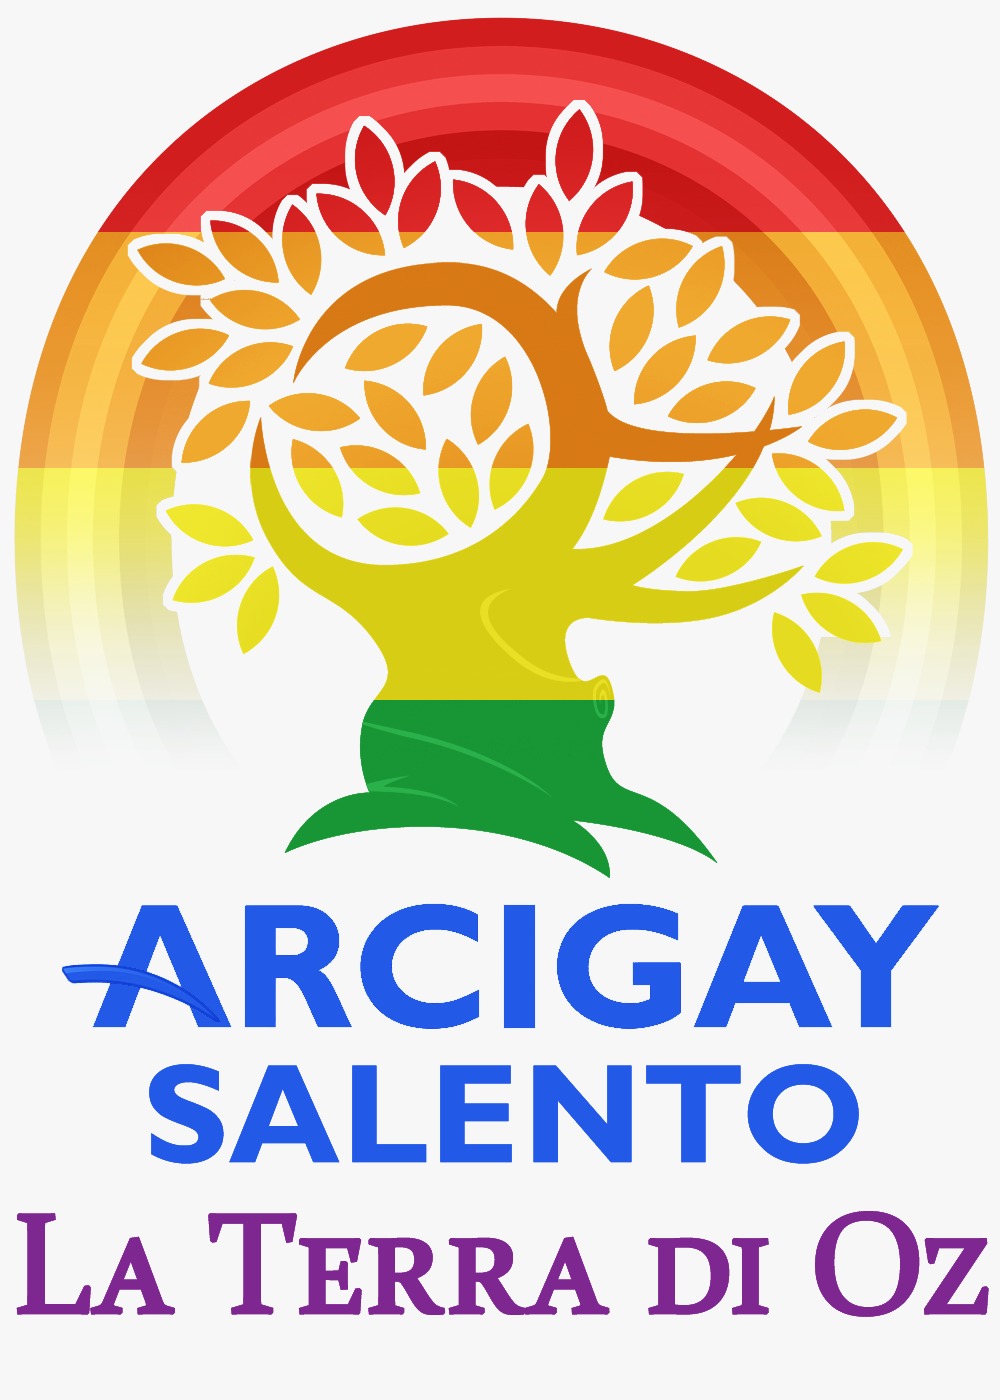 Contest creazione logo Arcigay